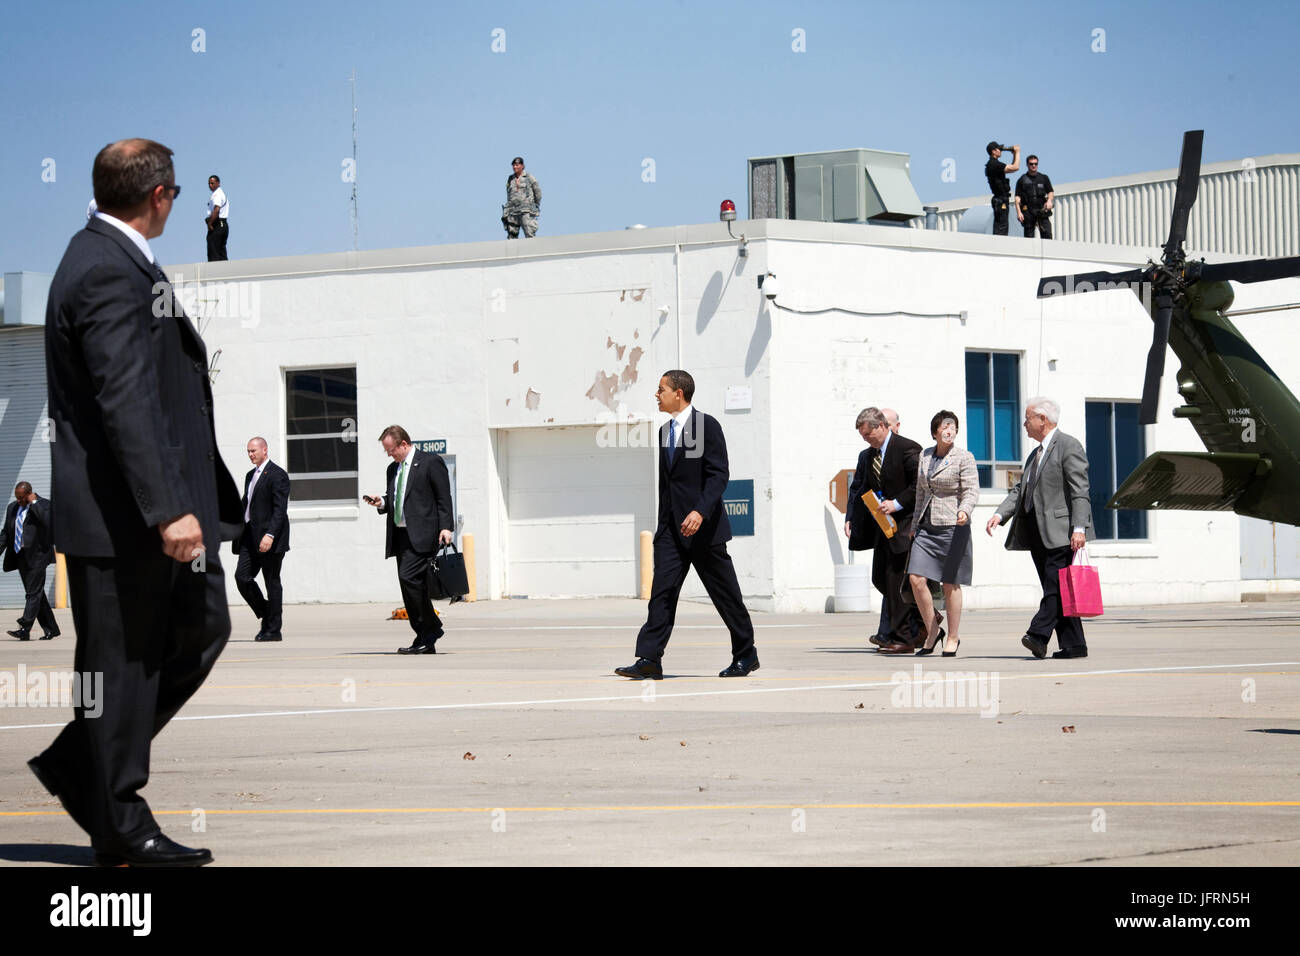 Le président Barack Obama et les membres du personnel de la Maison Blanche se préparer à quitter l'aéroport de Des Moines, le 22 avril 2009, à la suite d'une visite à Newton, Iowa. Photo Officiel de la Maison Blanche par Pete Souza Banque D'Images